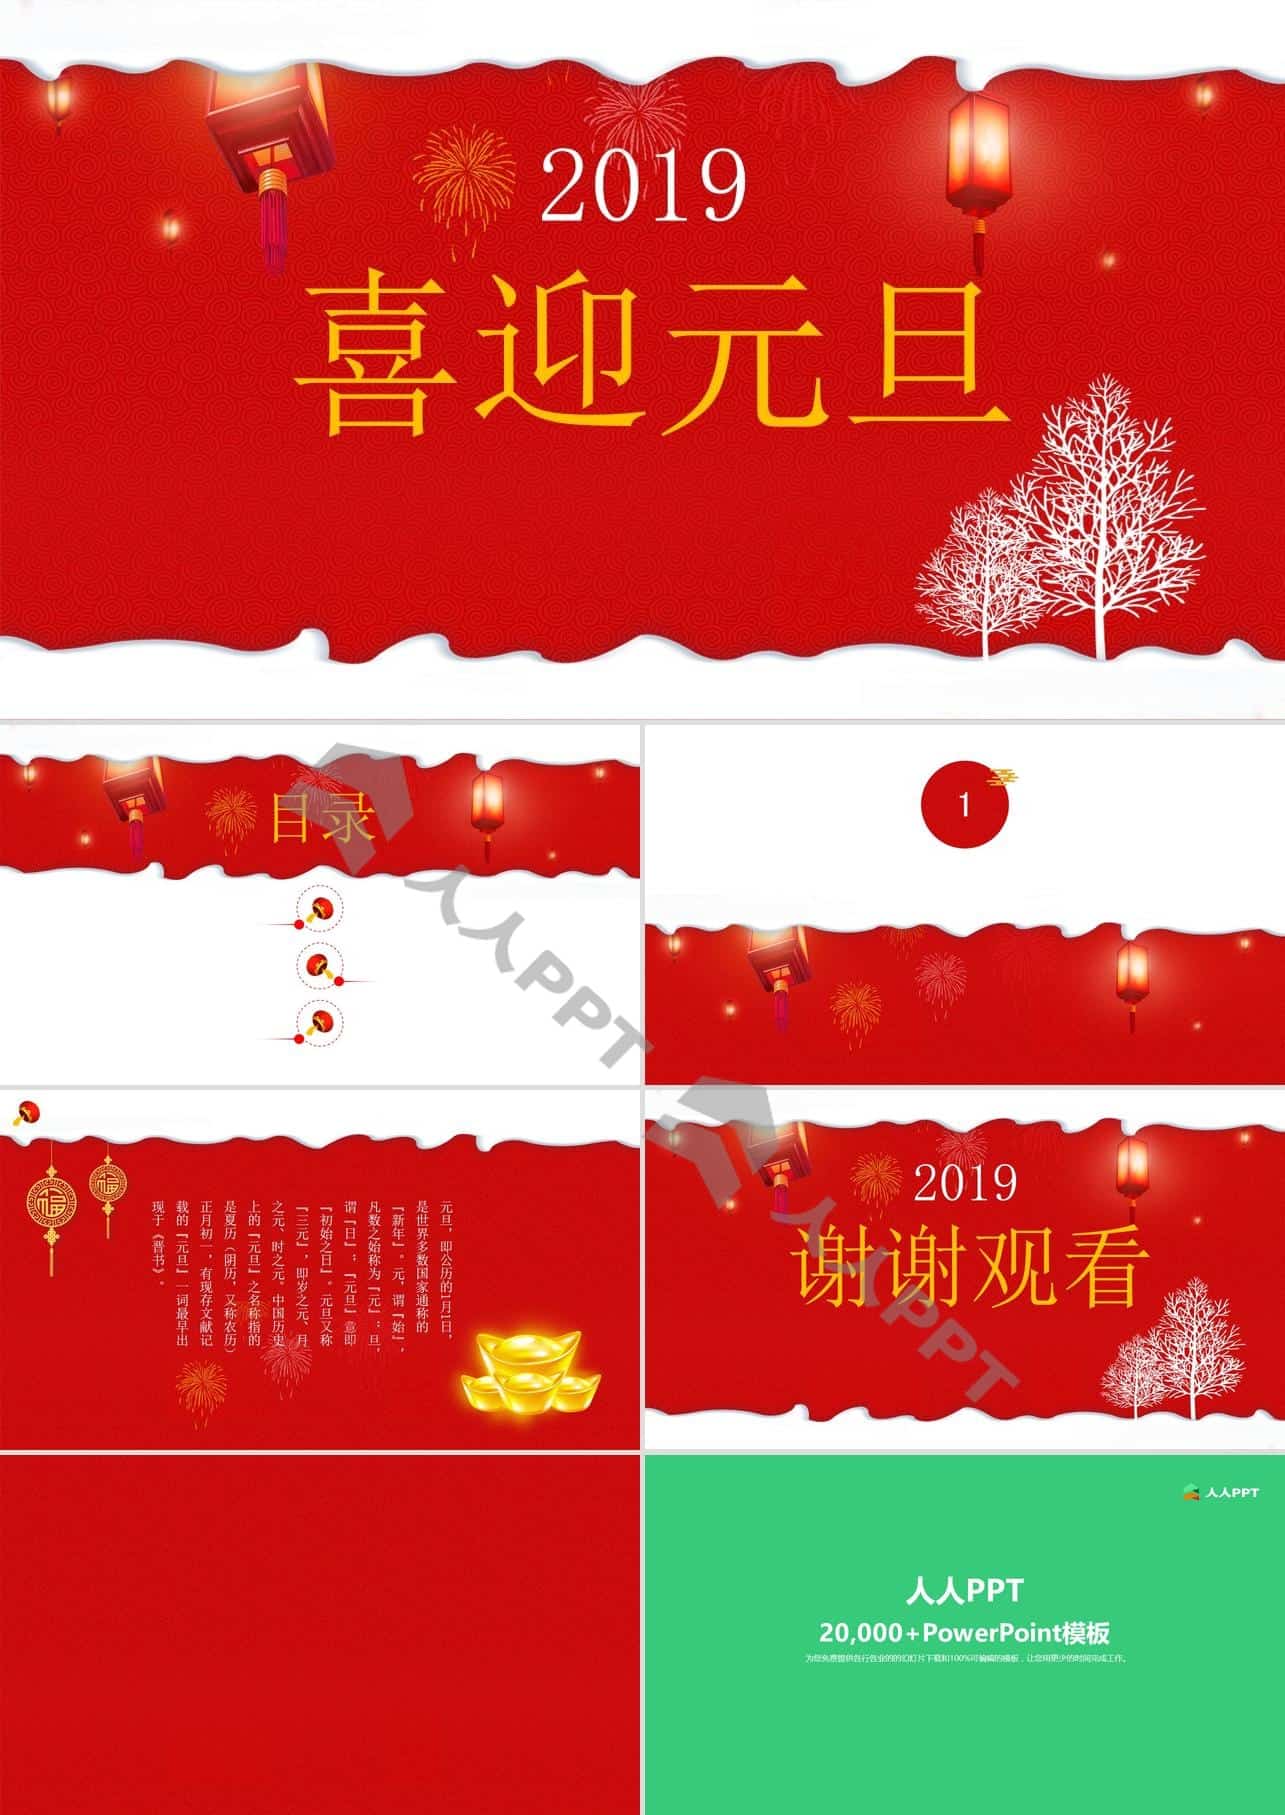 瑞雪丰年――喜迎元旦喜庆红元旦节PPT模板长图